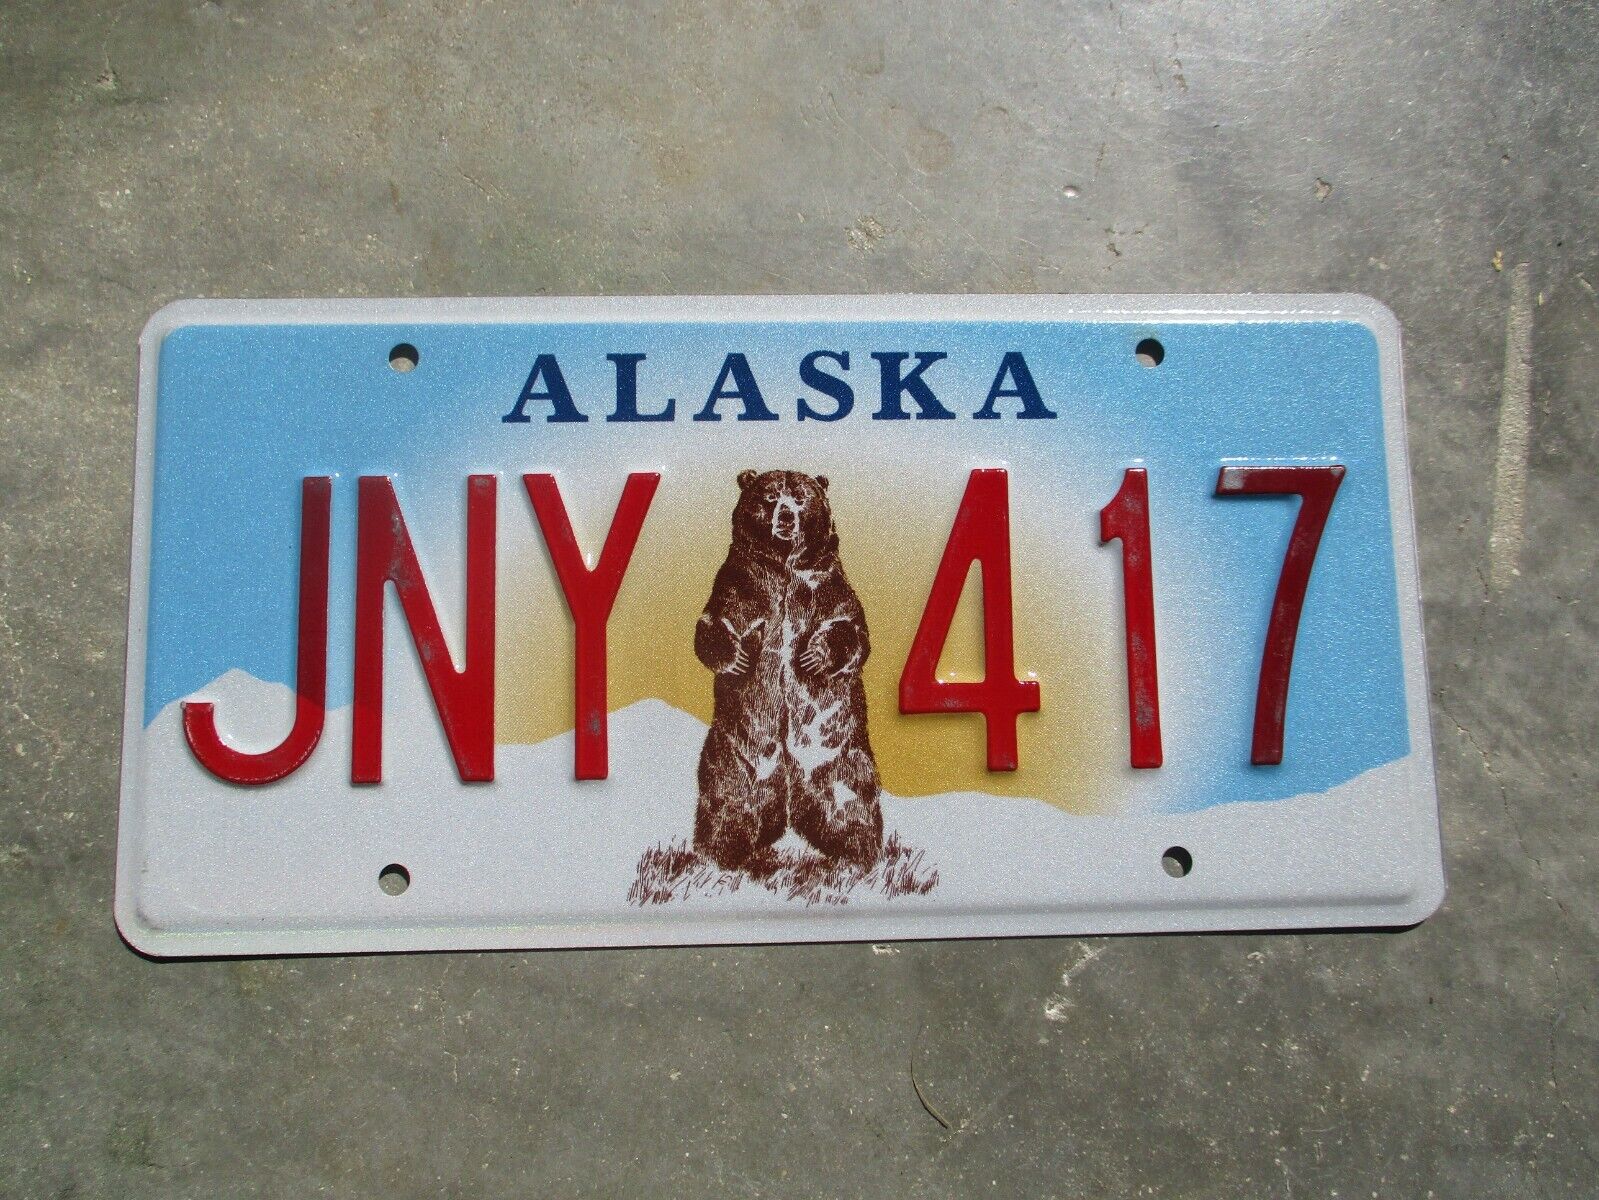 Alaska  Bear License Plate #   Jny  417